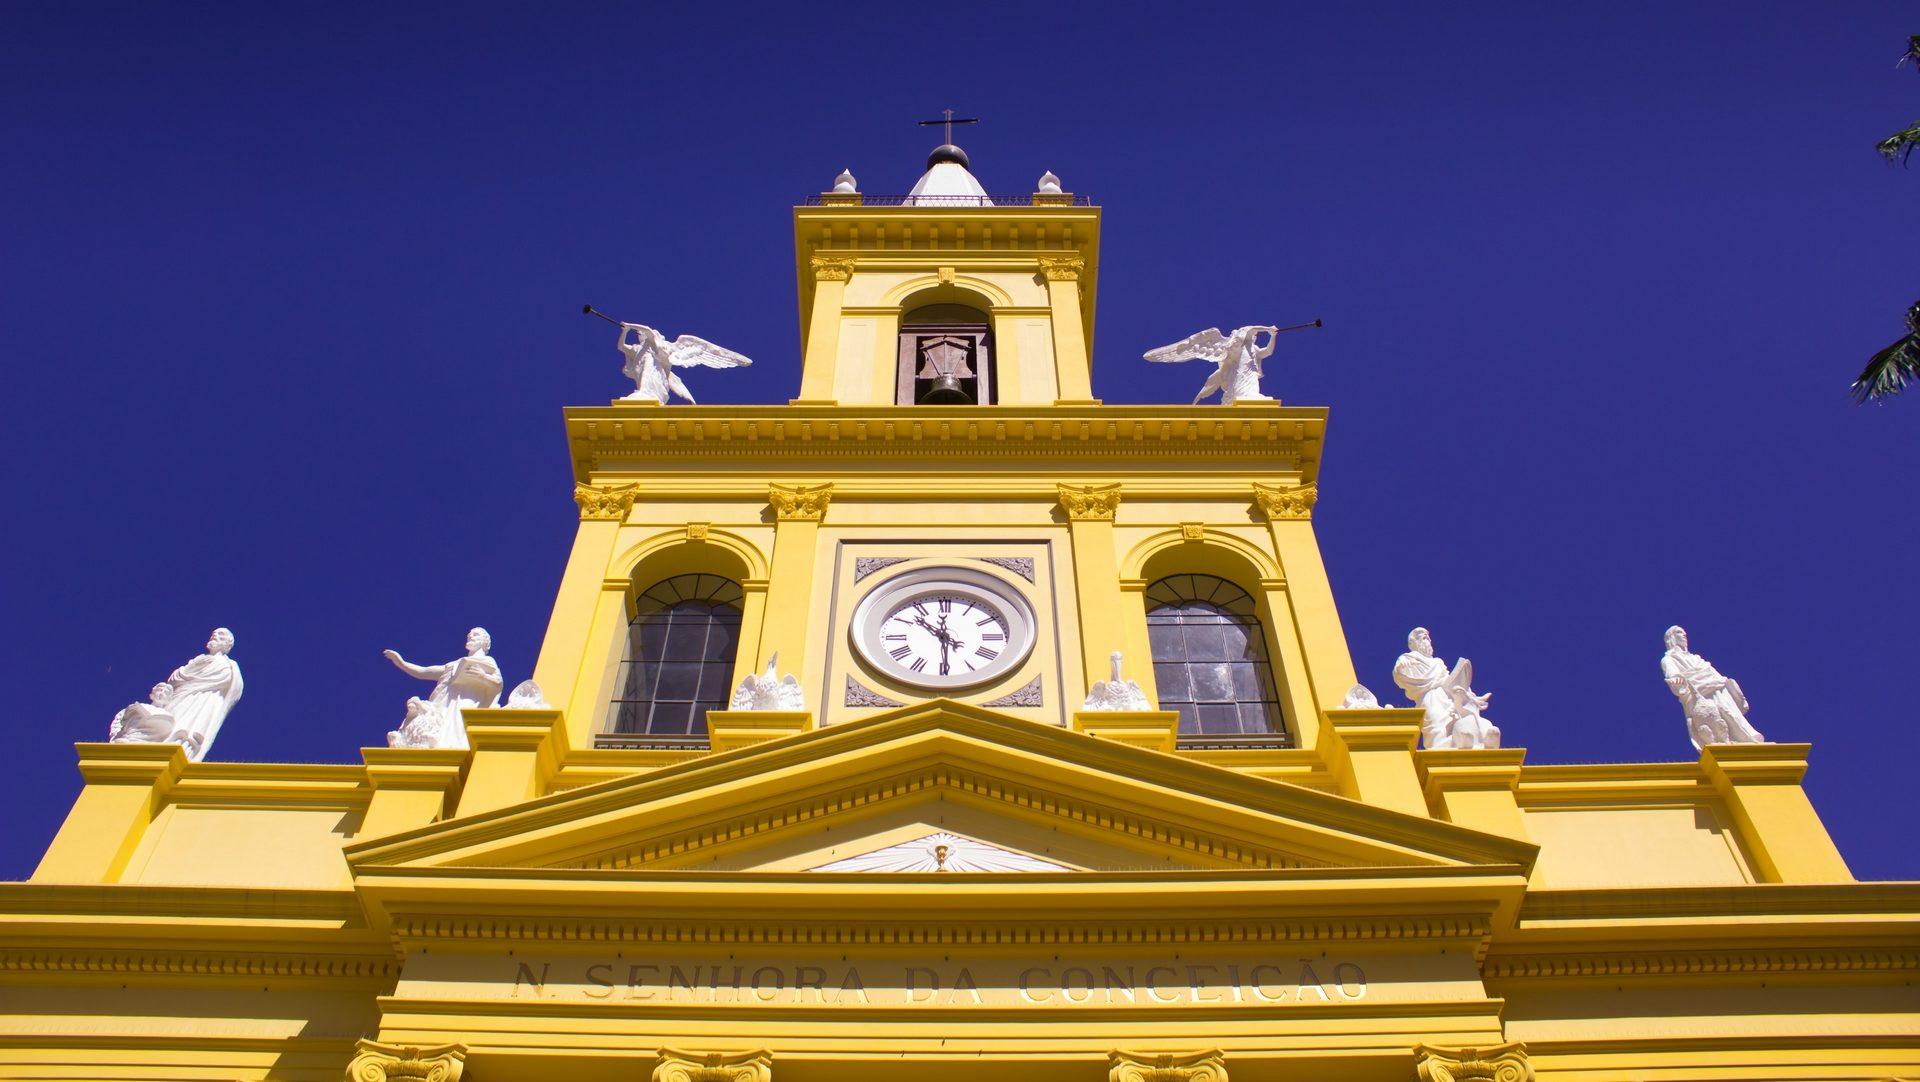 La cathédrale de Campinas au Brésil | wikimedia commons Guilherme Crispim de Faria Cruz CC-BY-SA 4.0